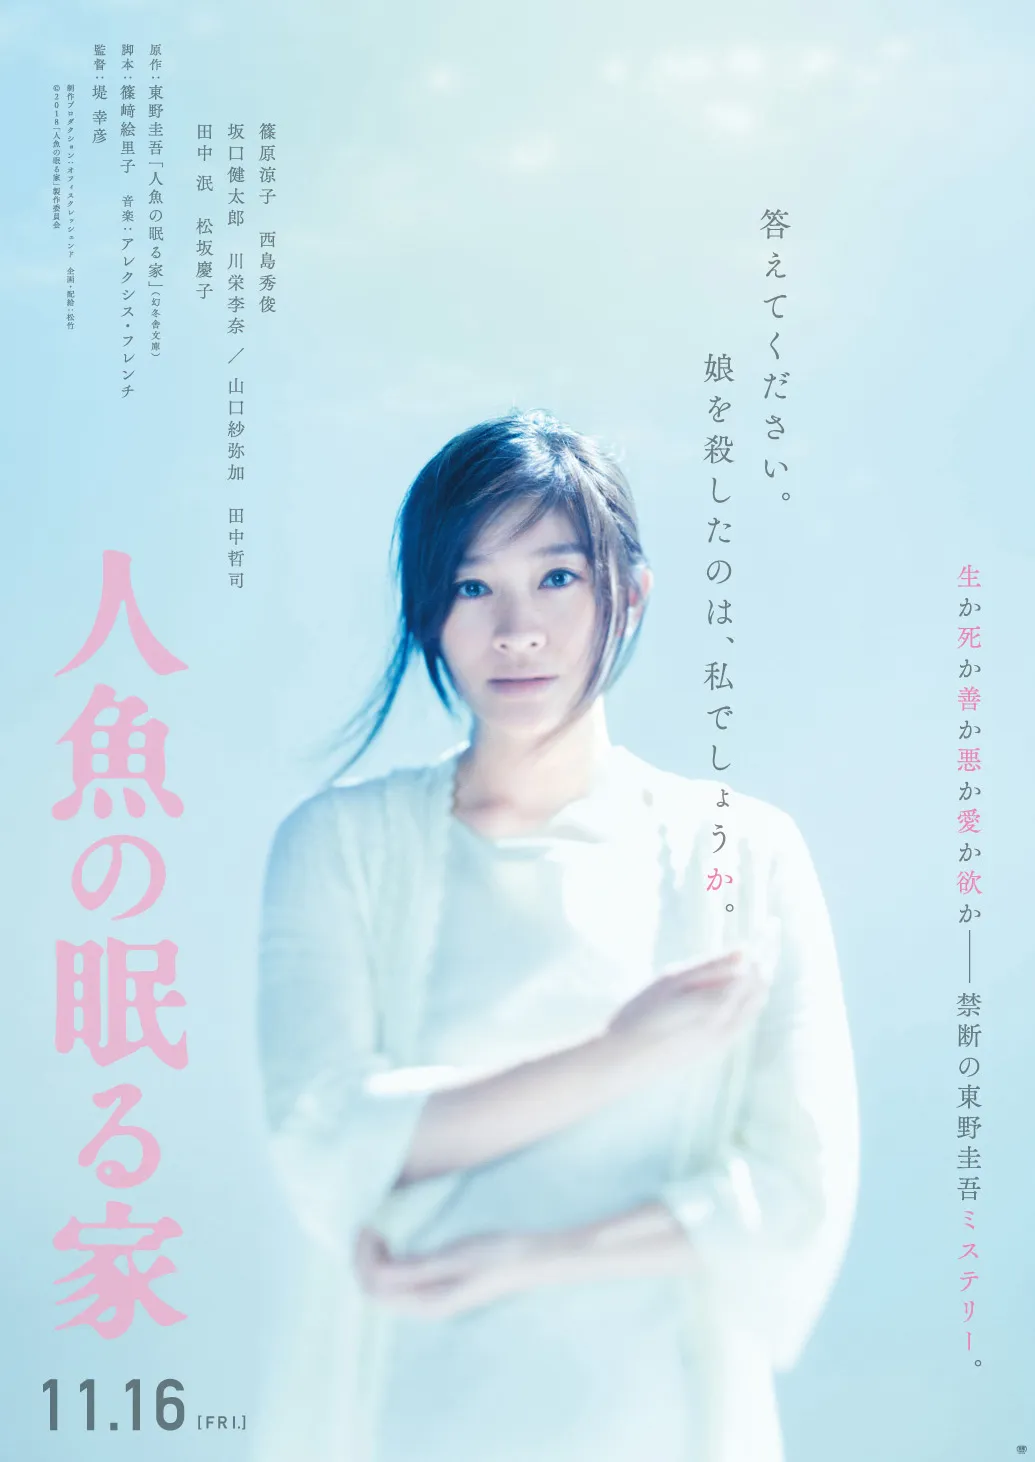 11月16日(金)公開の映画「人魚の眠る家」で主演を務める篠原涼子